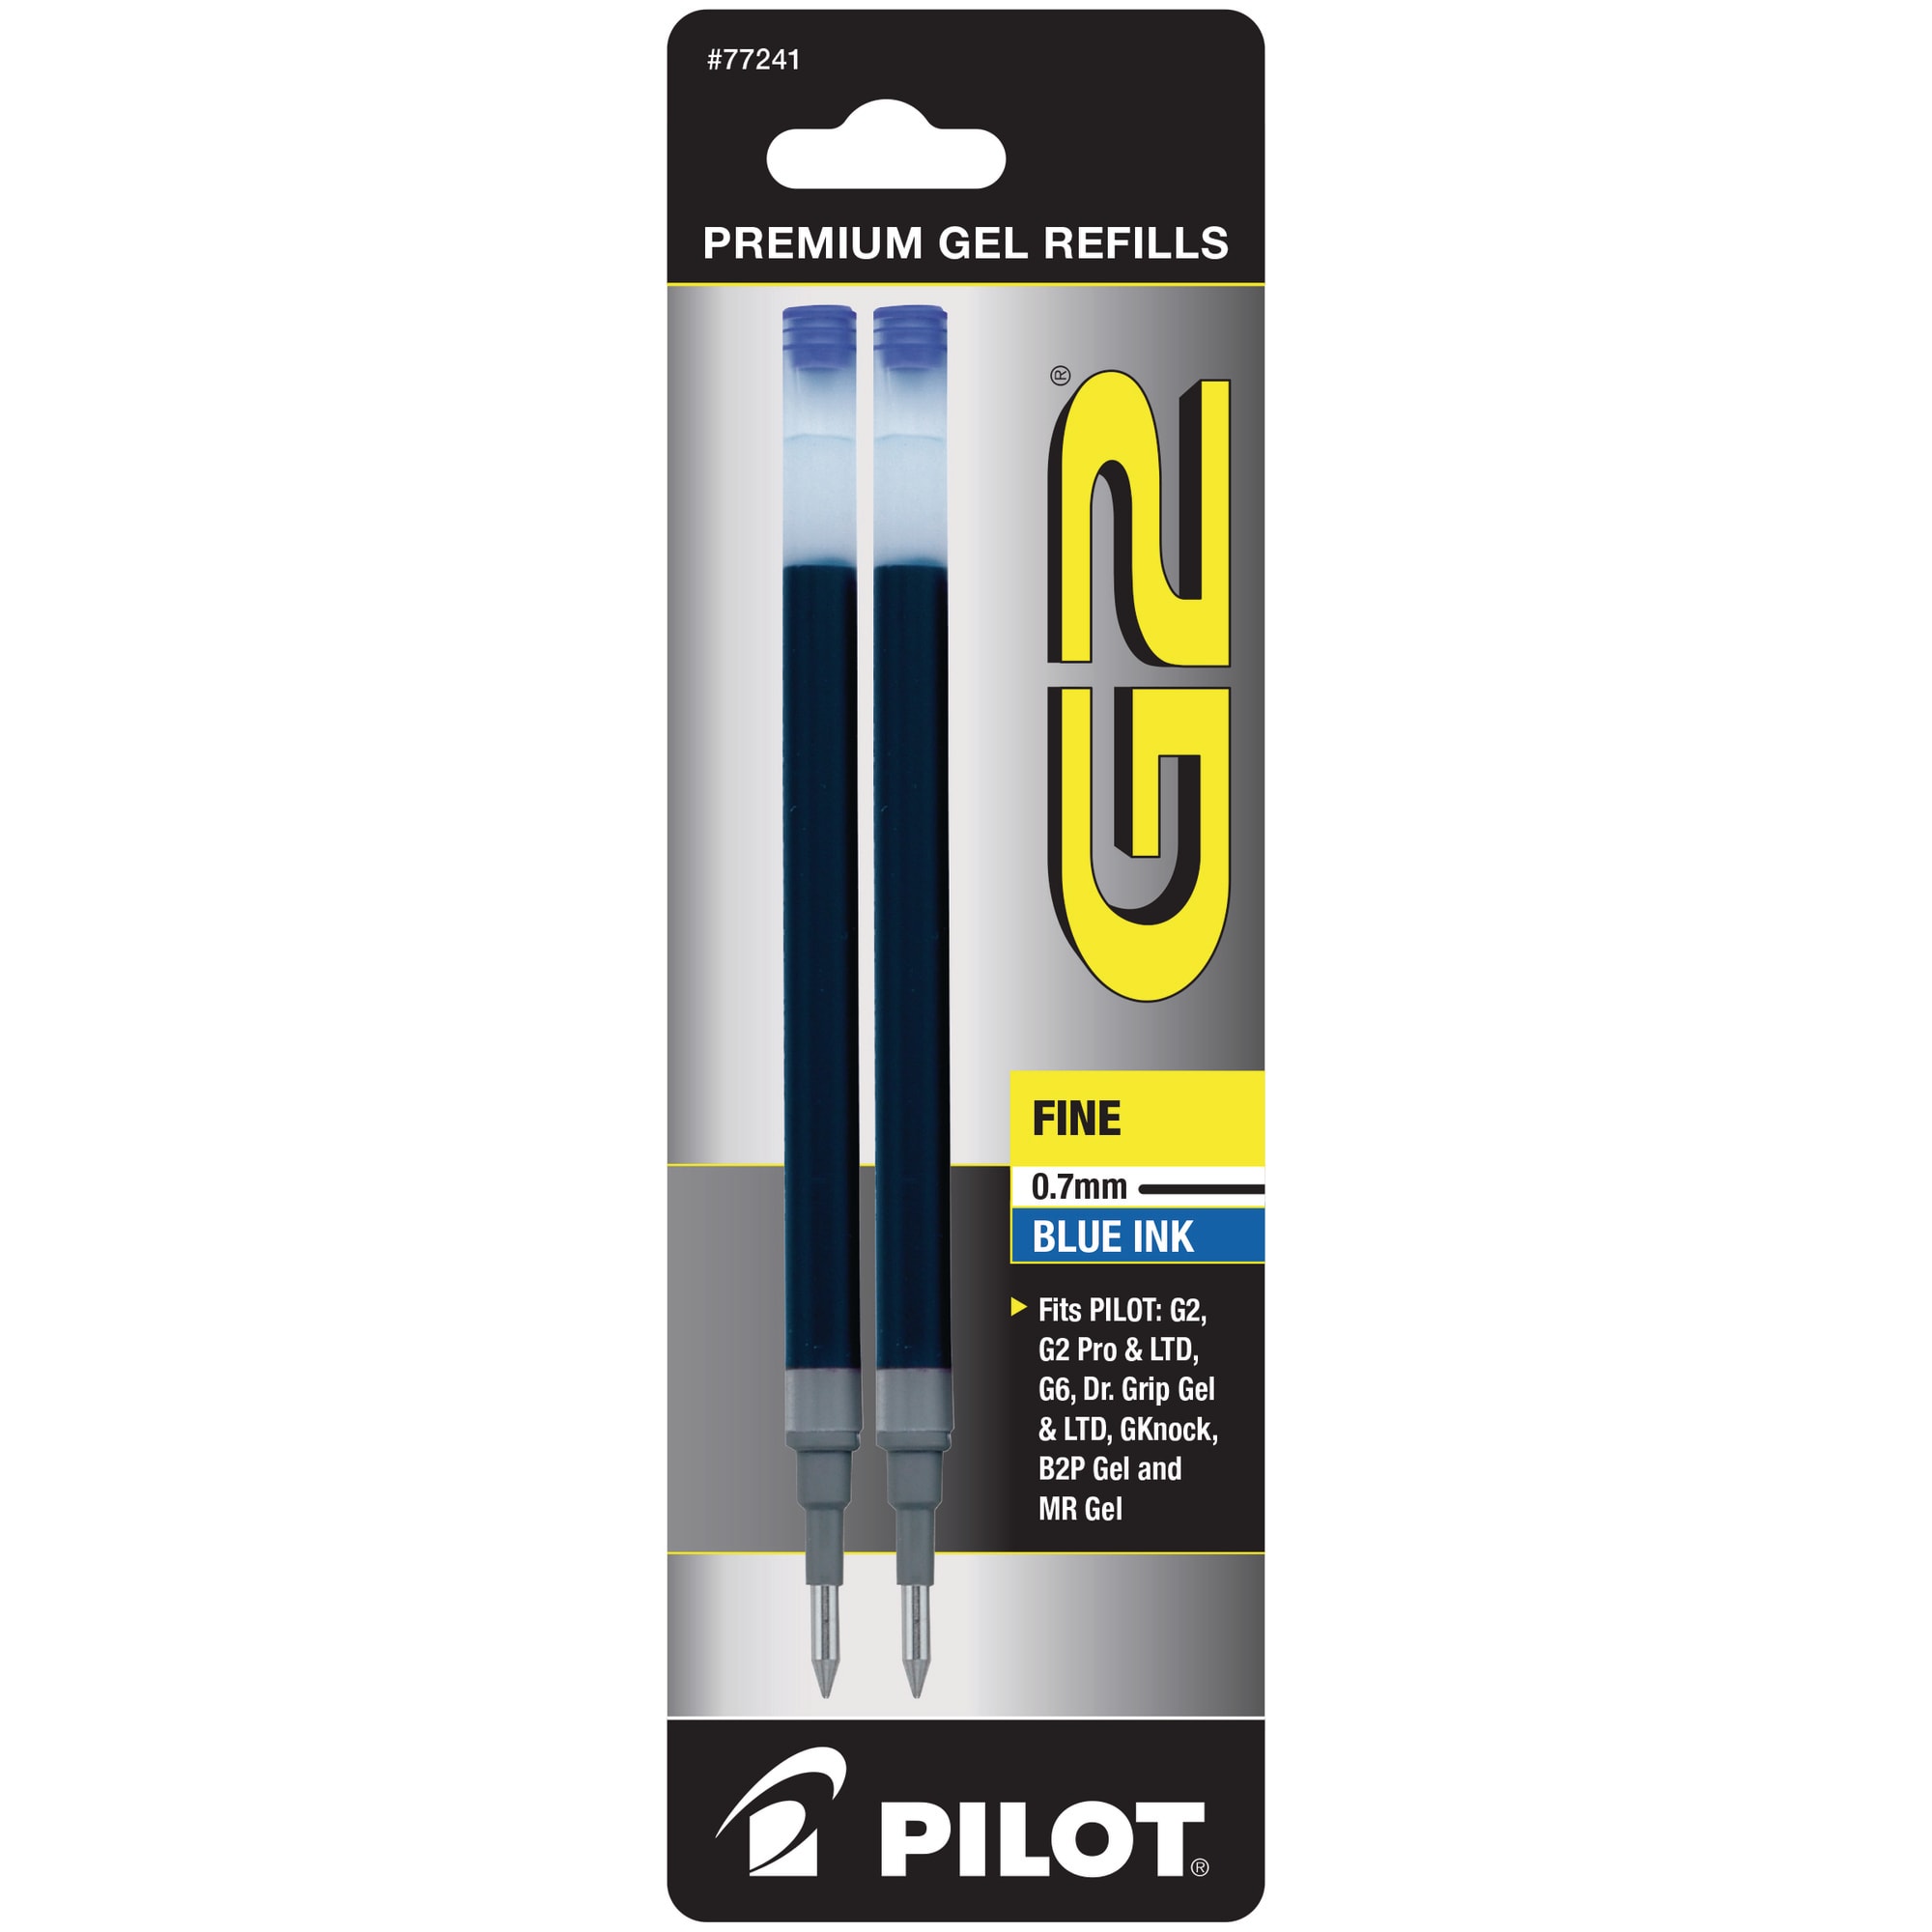 Pilot Pens - Ballpoint, Gel, & Rollerball Pens | Office Depot